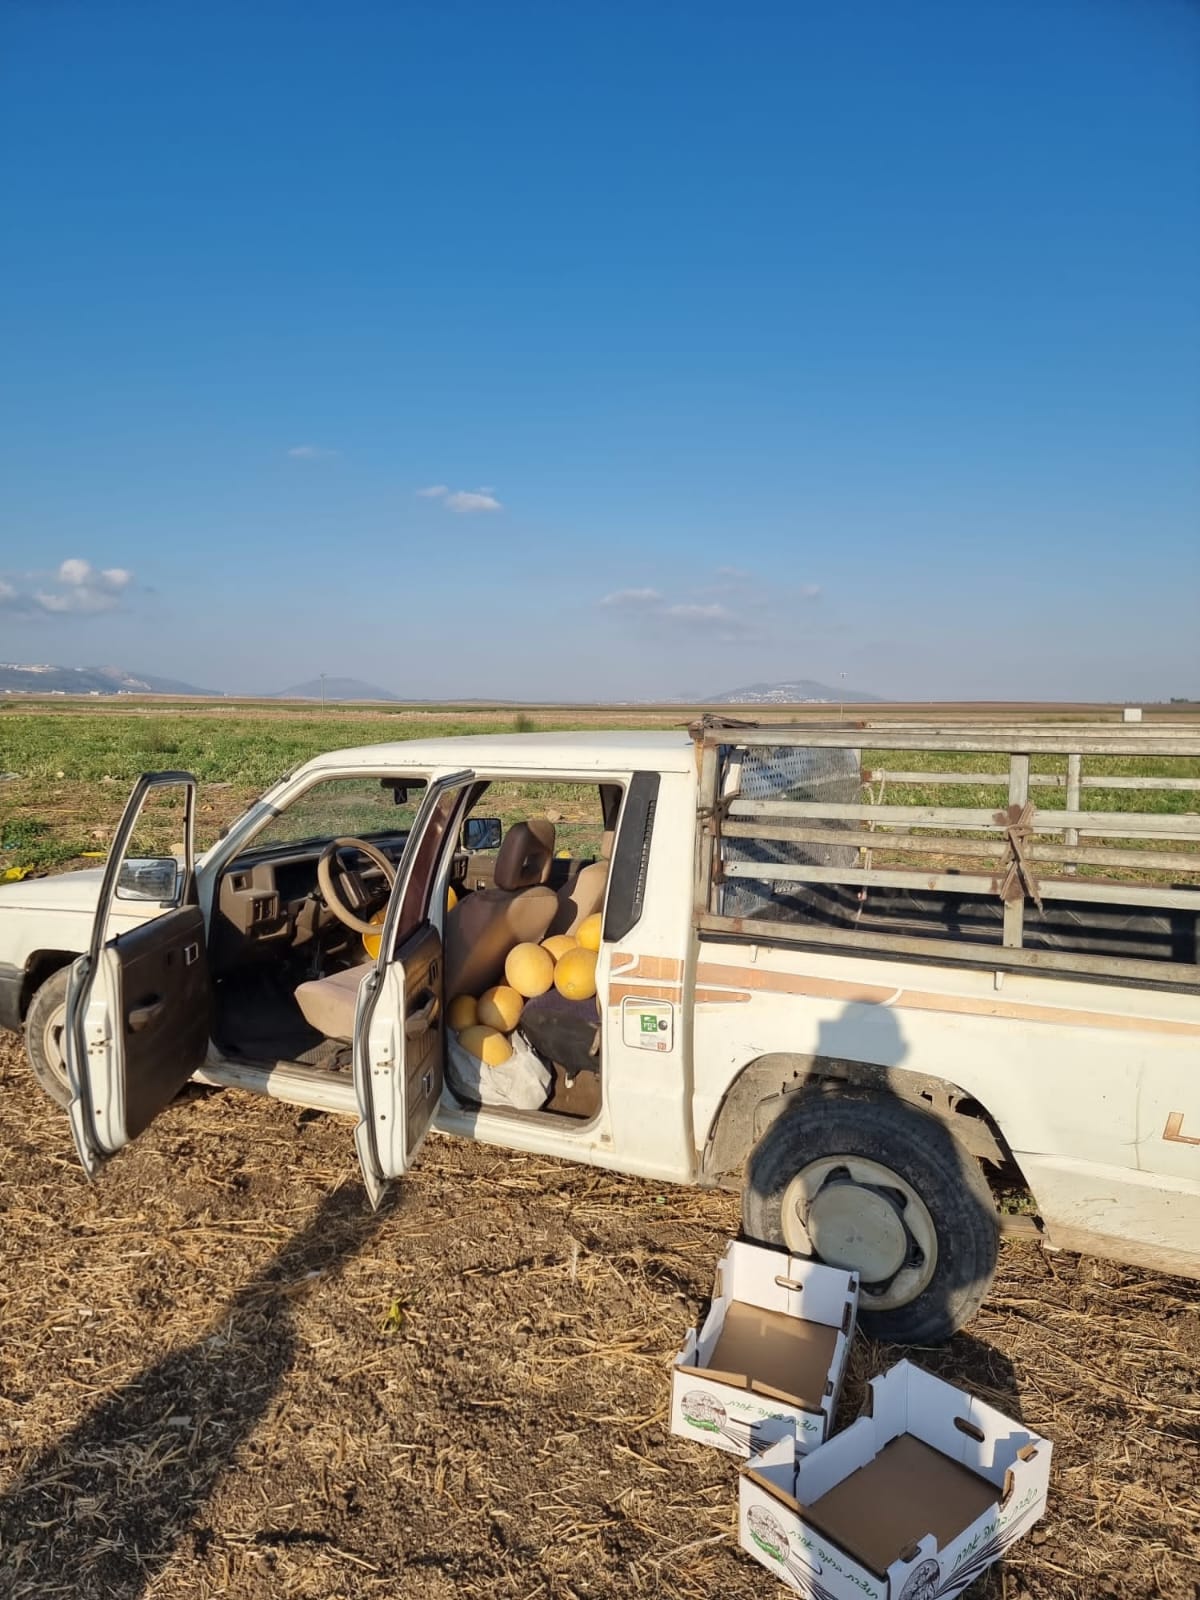 מלונים שנתפסו ברכב בתוך השטחים החקלאים של מעין ברוך (צילום: דוברות המשטרה)